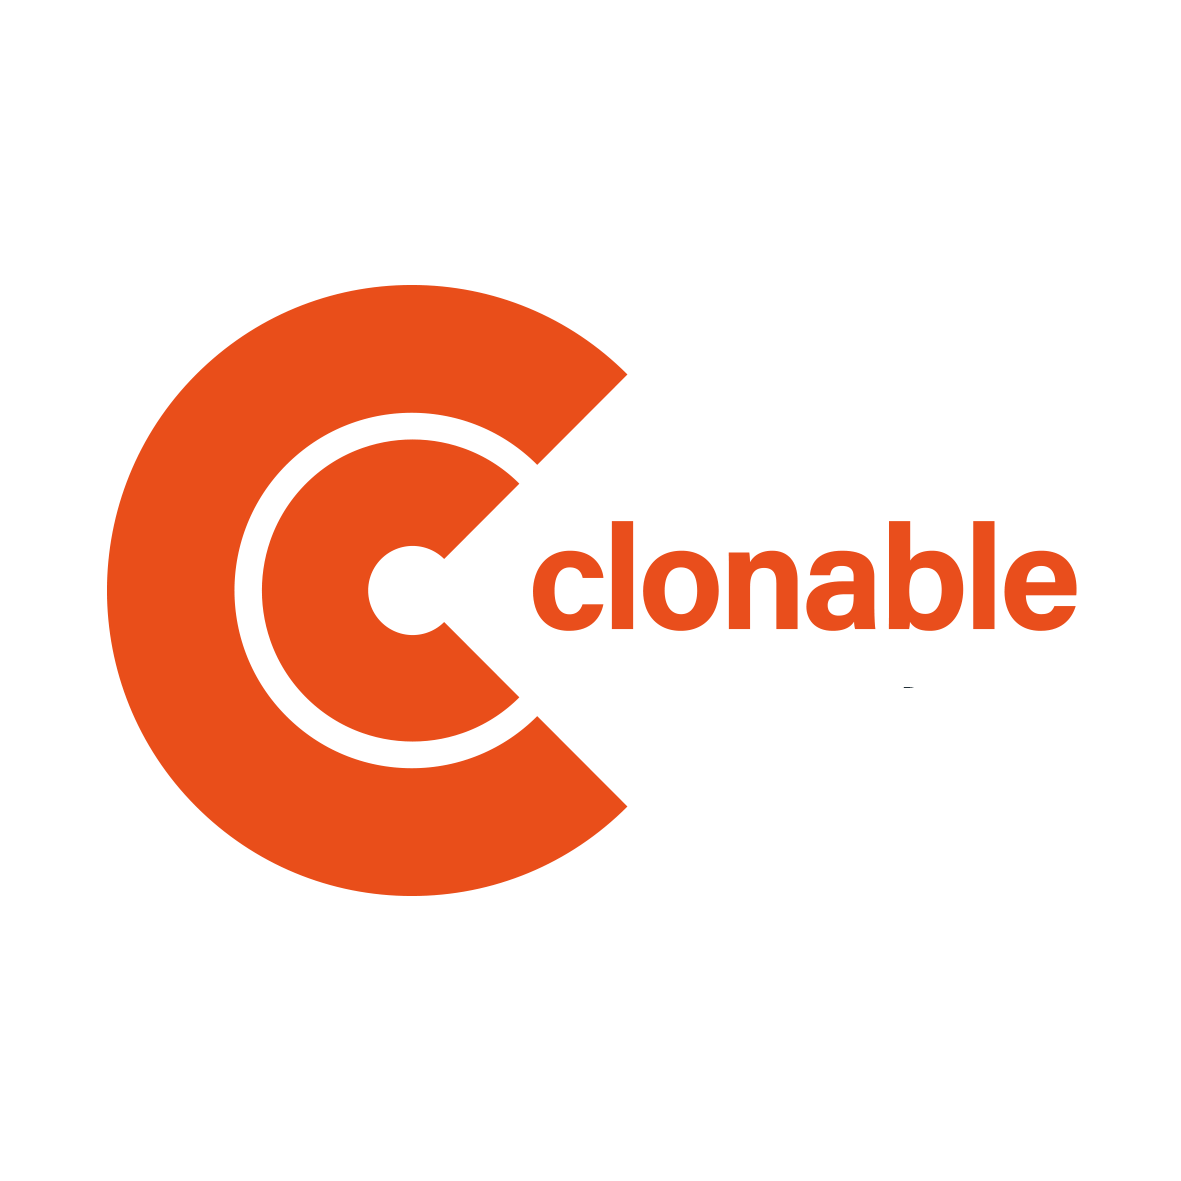 Clonable logo sfondo chiaro